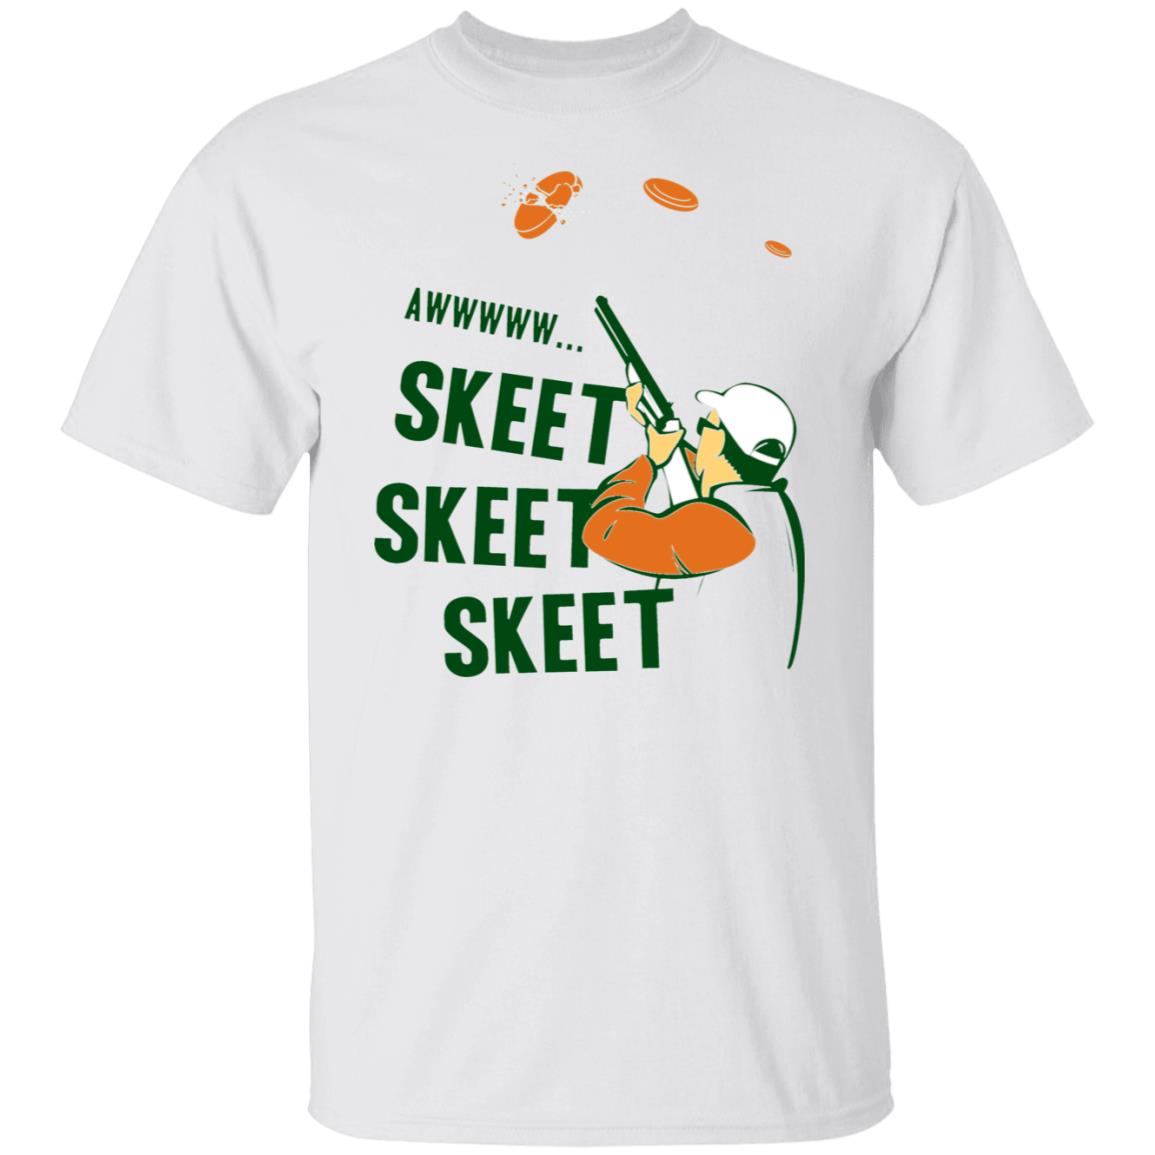 Awww Skeet Skeet Skeet Shirt